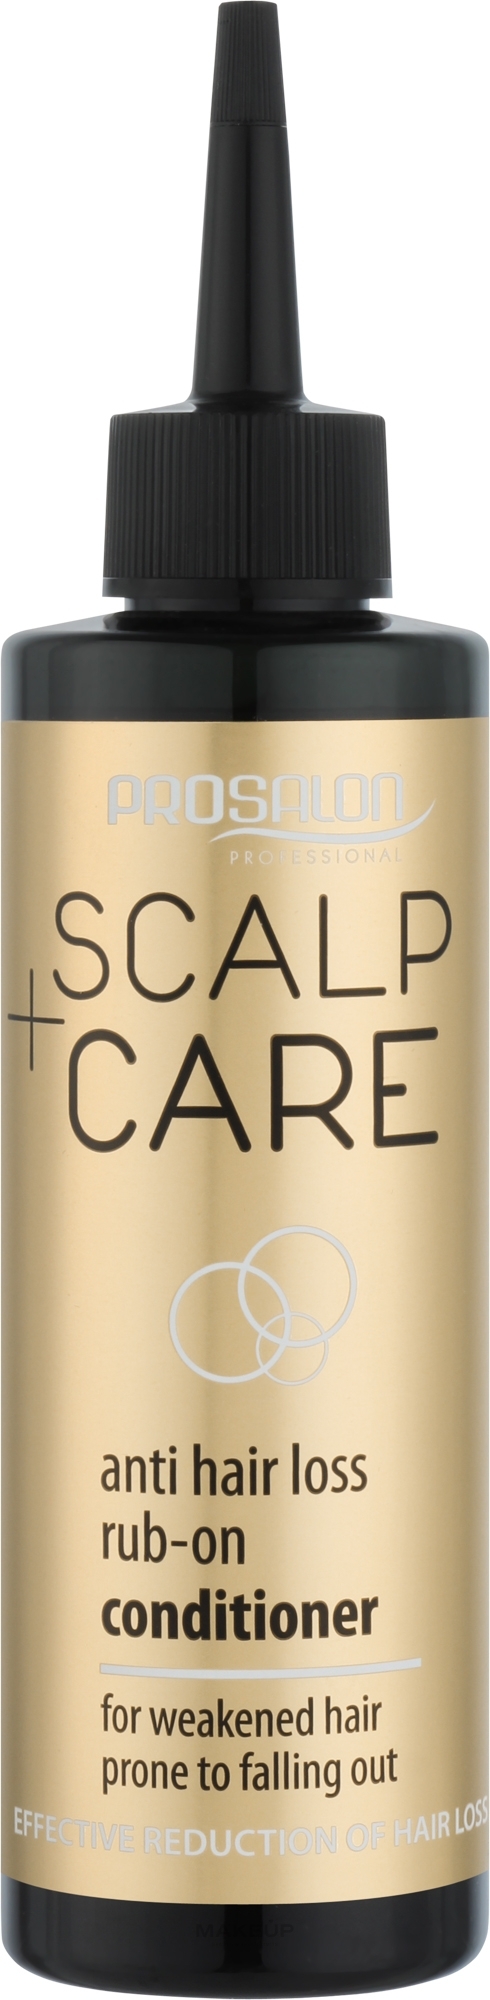 Лосьйон проти випадання волосся - Prosalon Scalp Care — фото 200ml